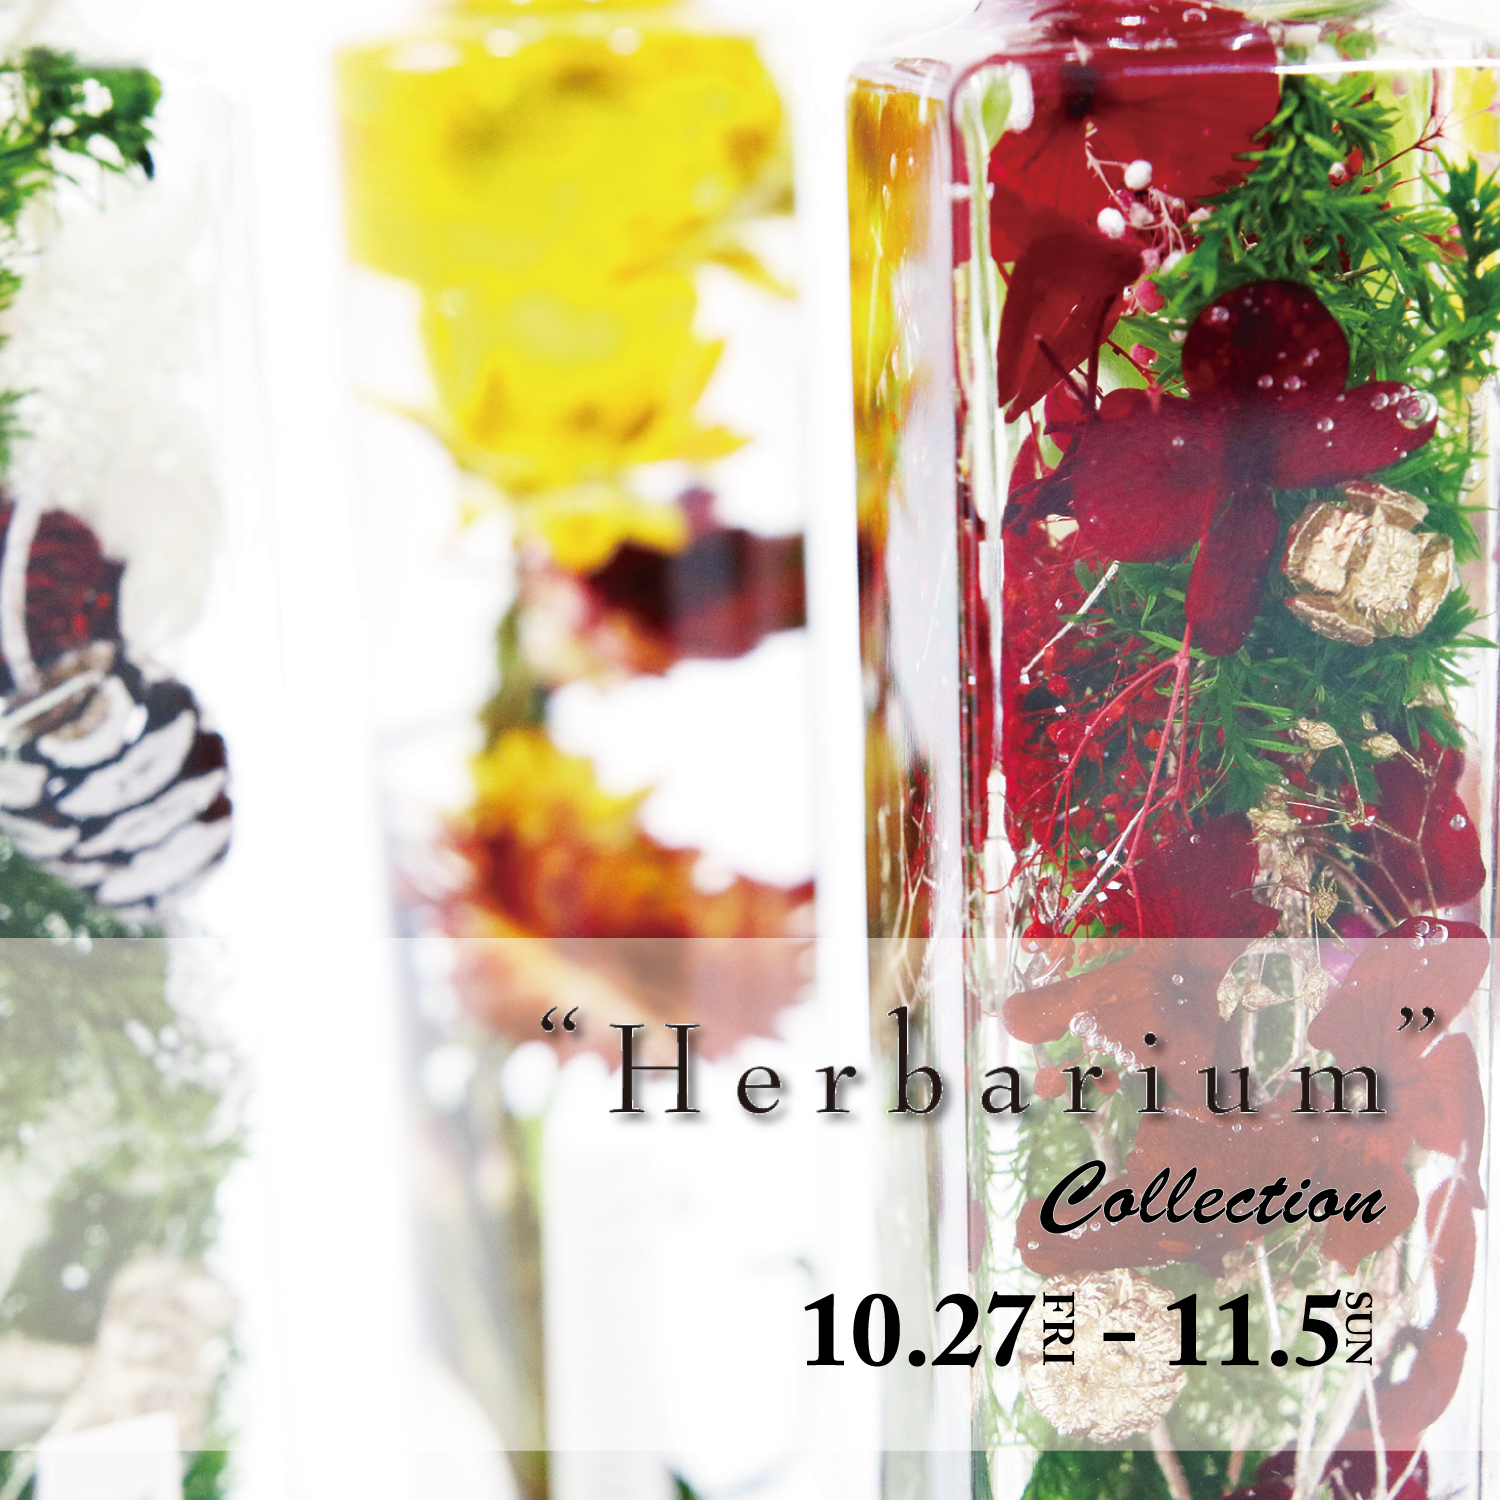 卸団地本店 花のある暮らし Herbarium Collection Jeans Factory ジーンズファクトリー 公式サイト